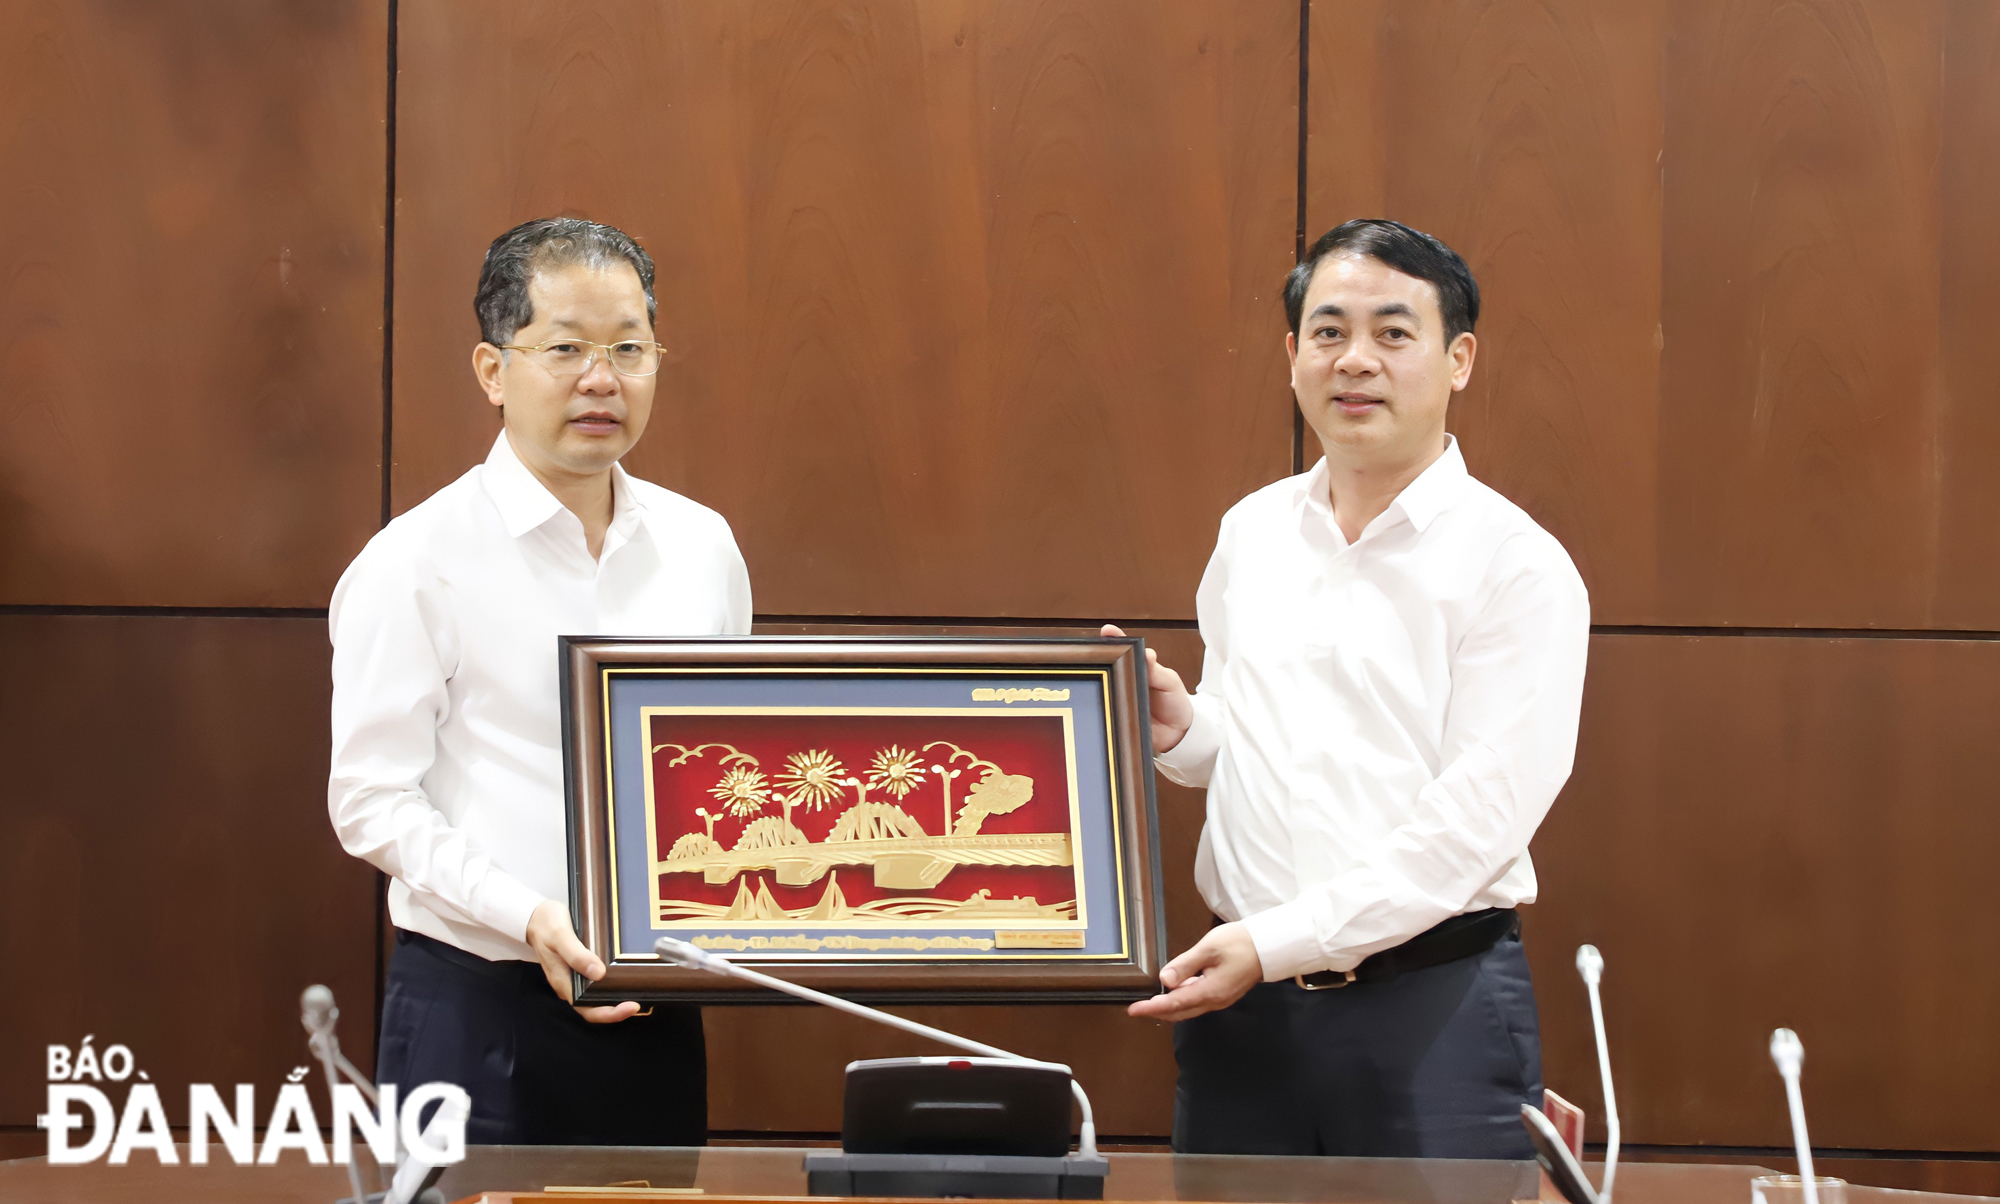 Thành phố Đà Nẵng và tỉnh Hậu Giang chia sẻ kinh nghiệm xây dựng Đảng, phát triển kinh tế-xã hội